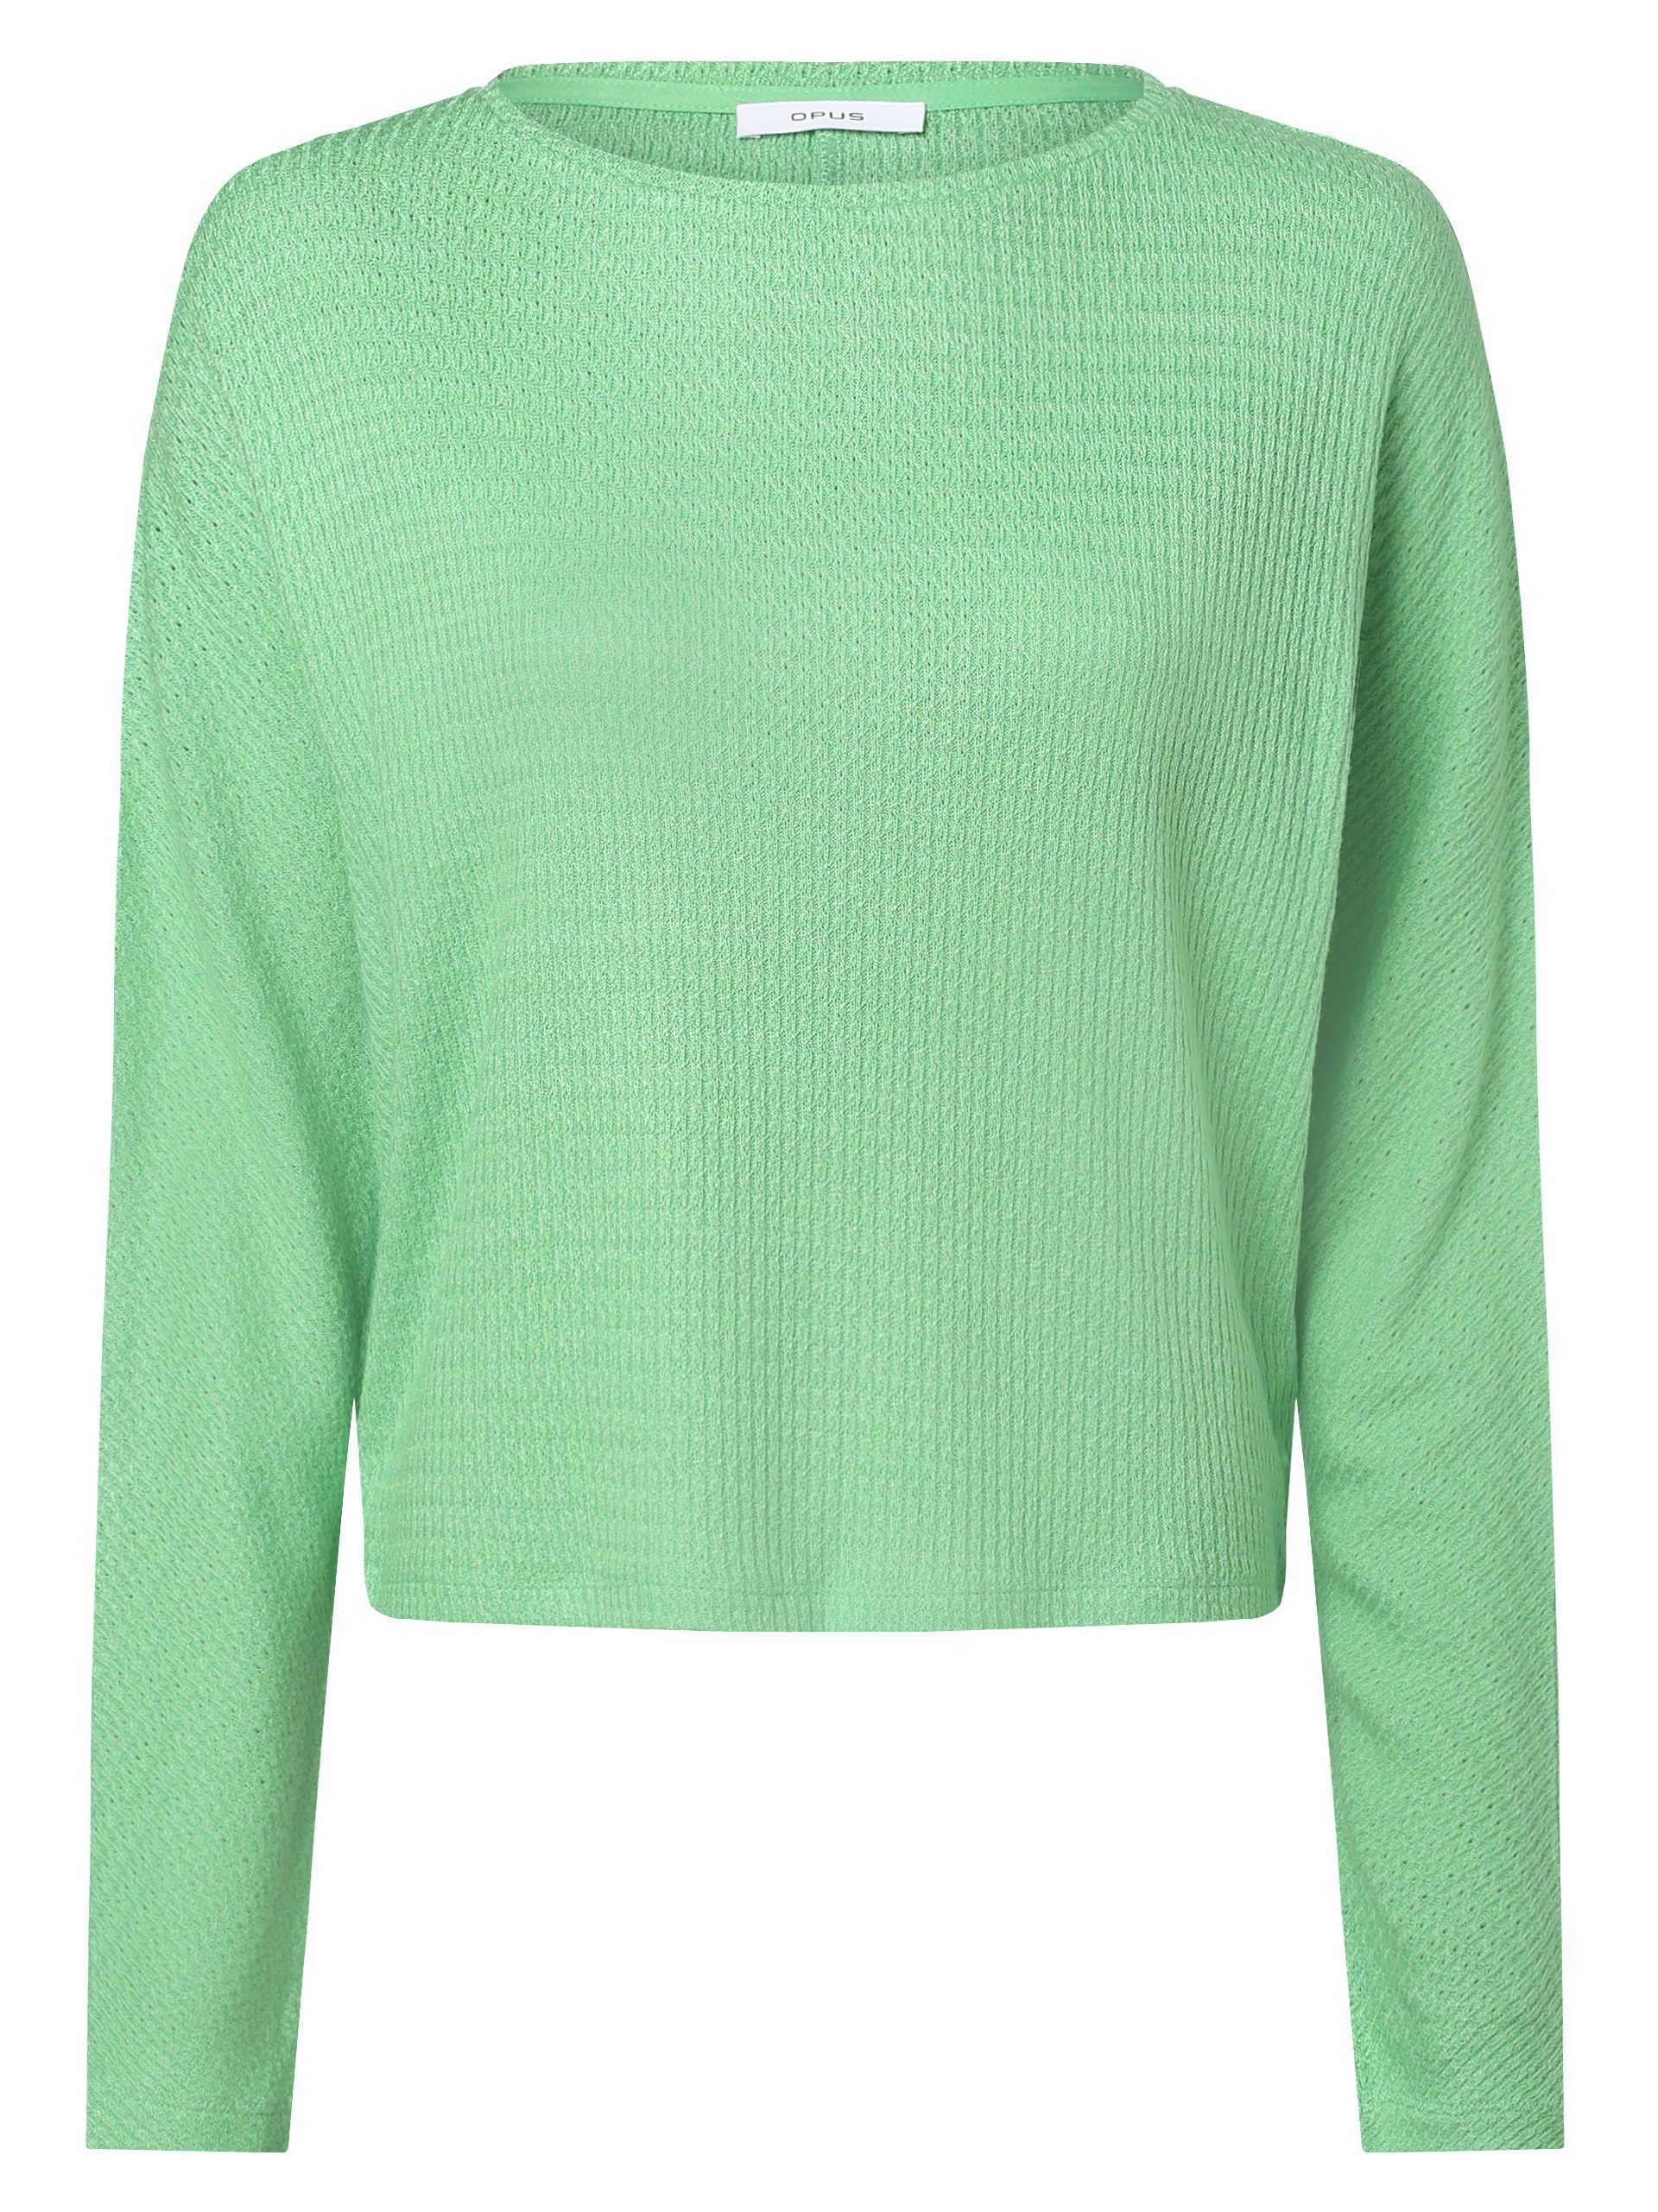 Grüne OPUS Pullover für Damen online kaufen | OTTO